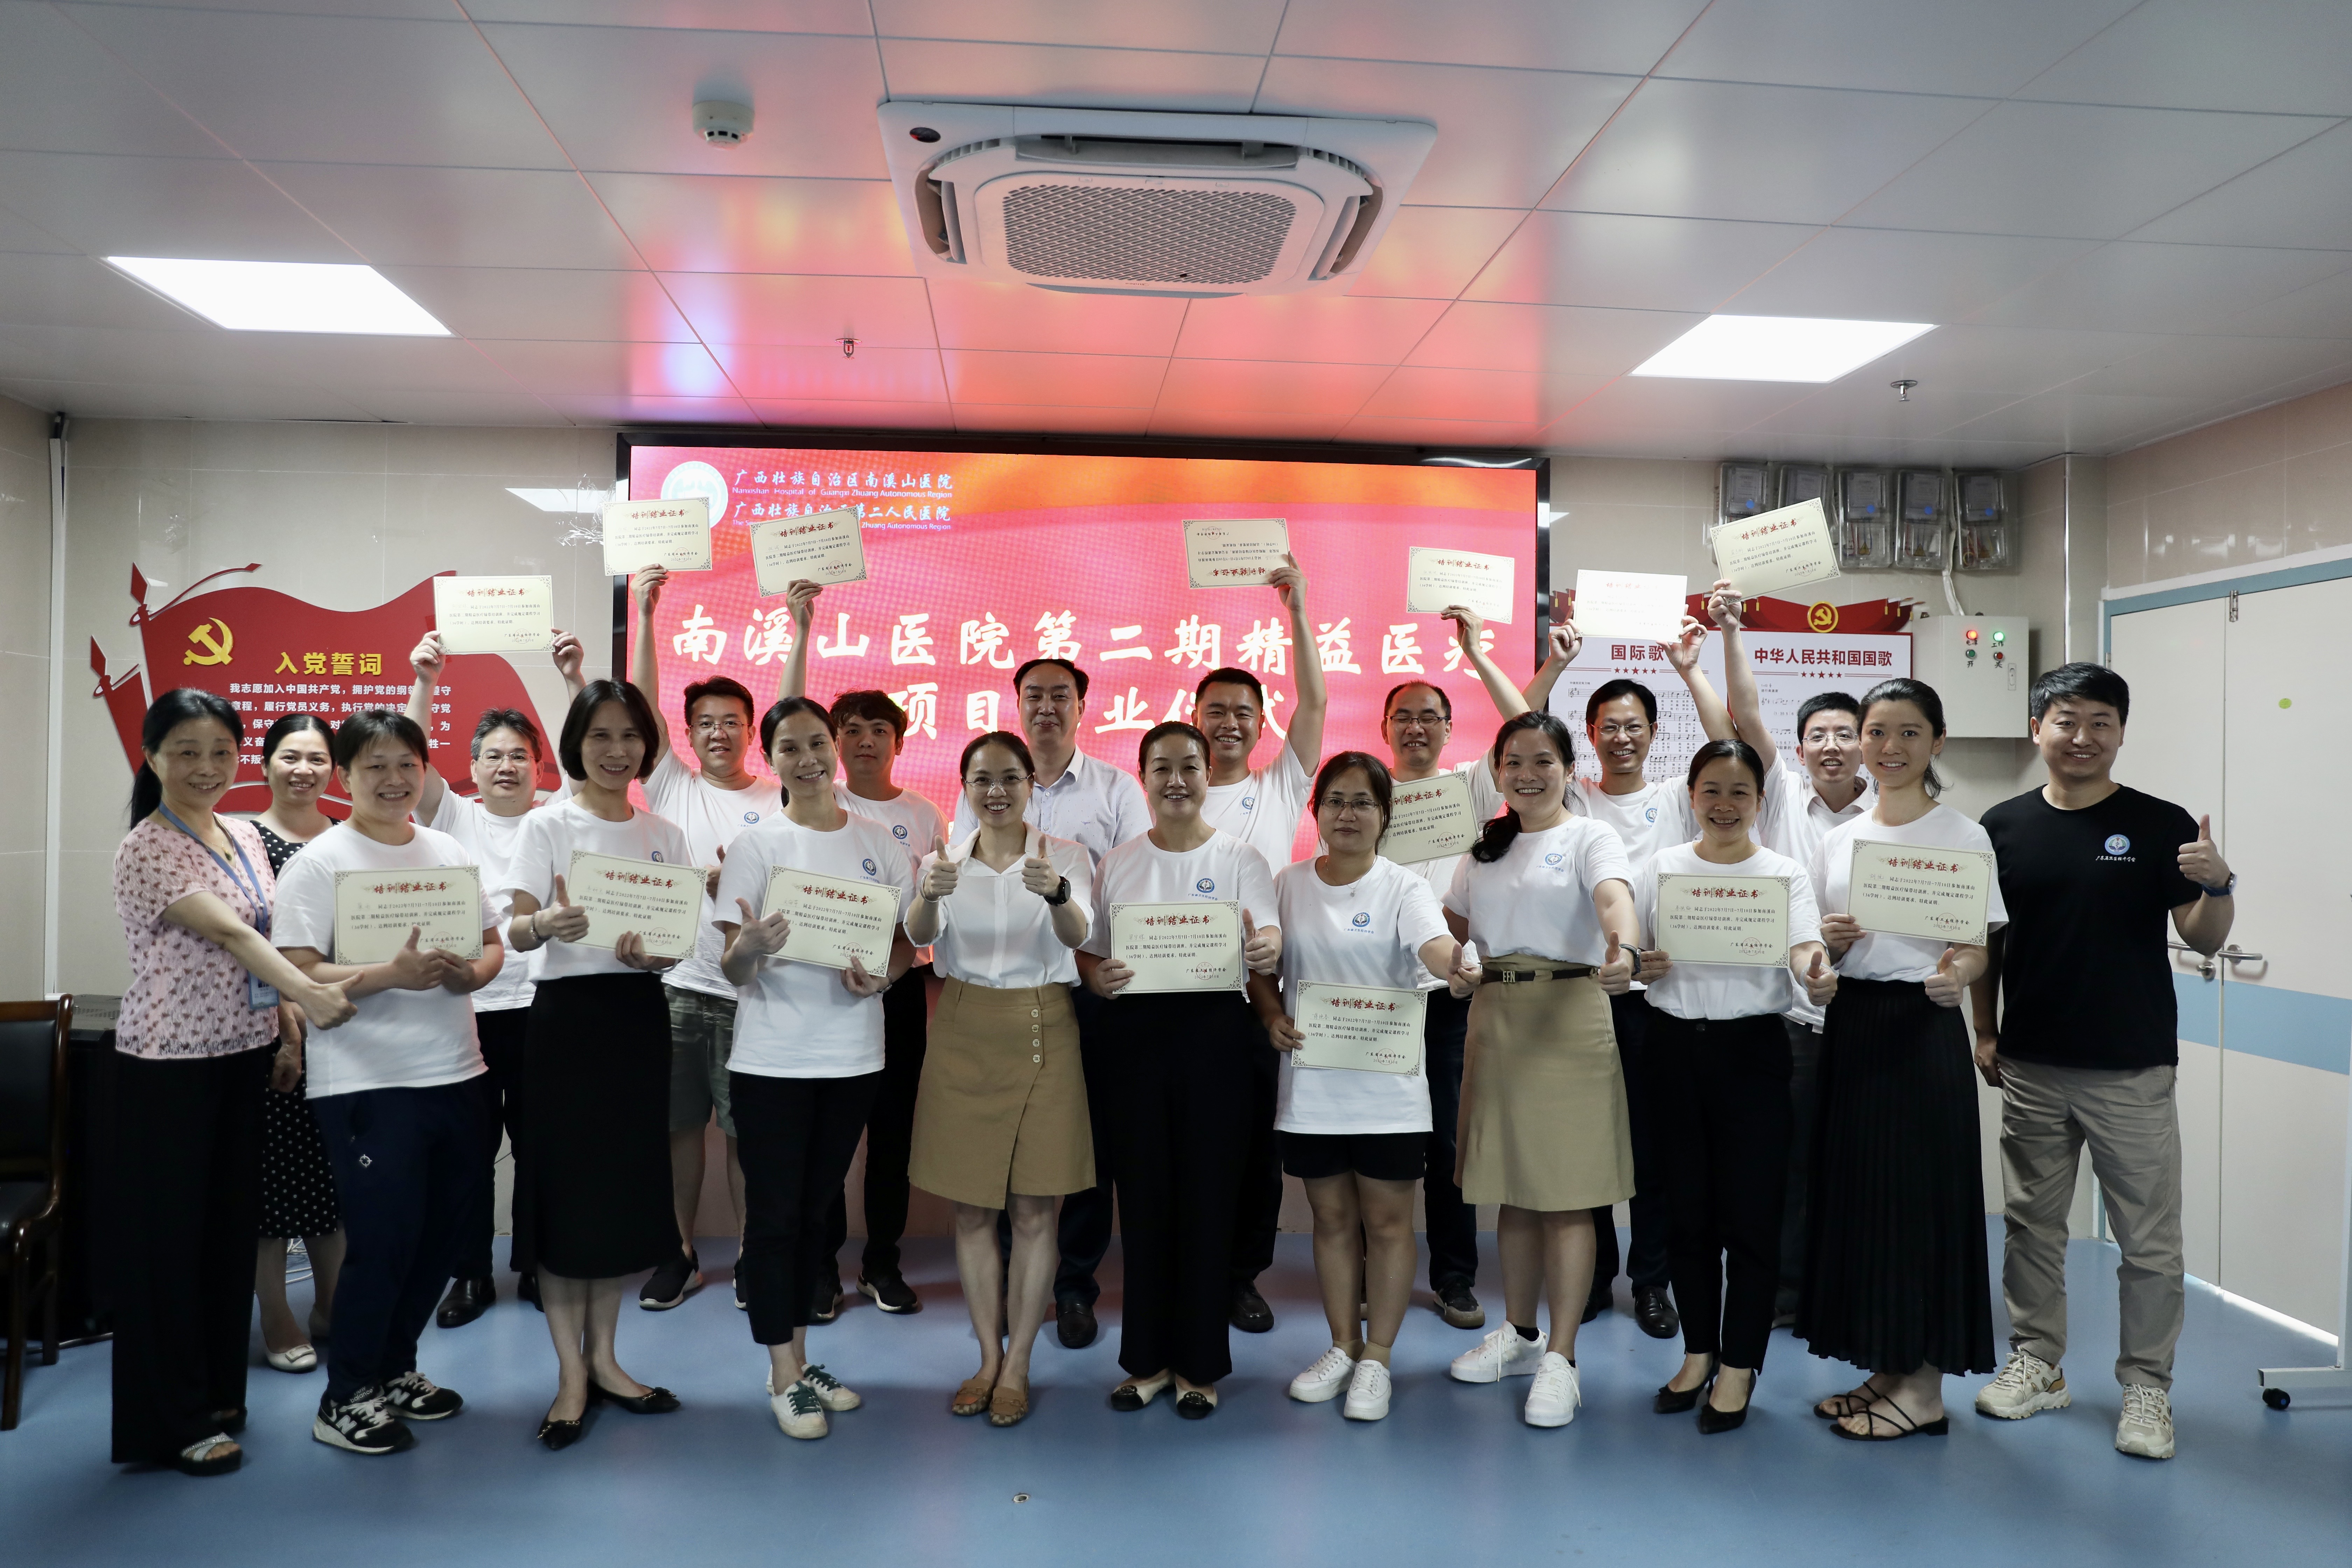 广西壮族自治区南溪山医院举办第二期精益医疗绿带培训班